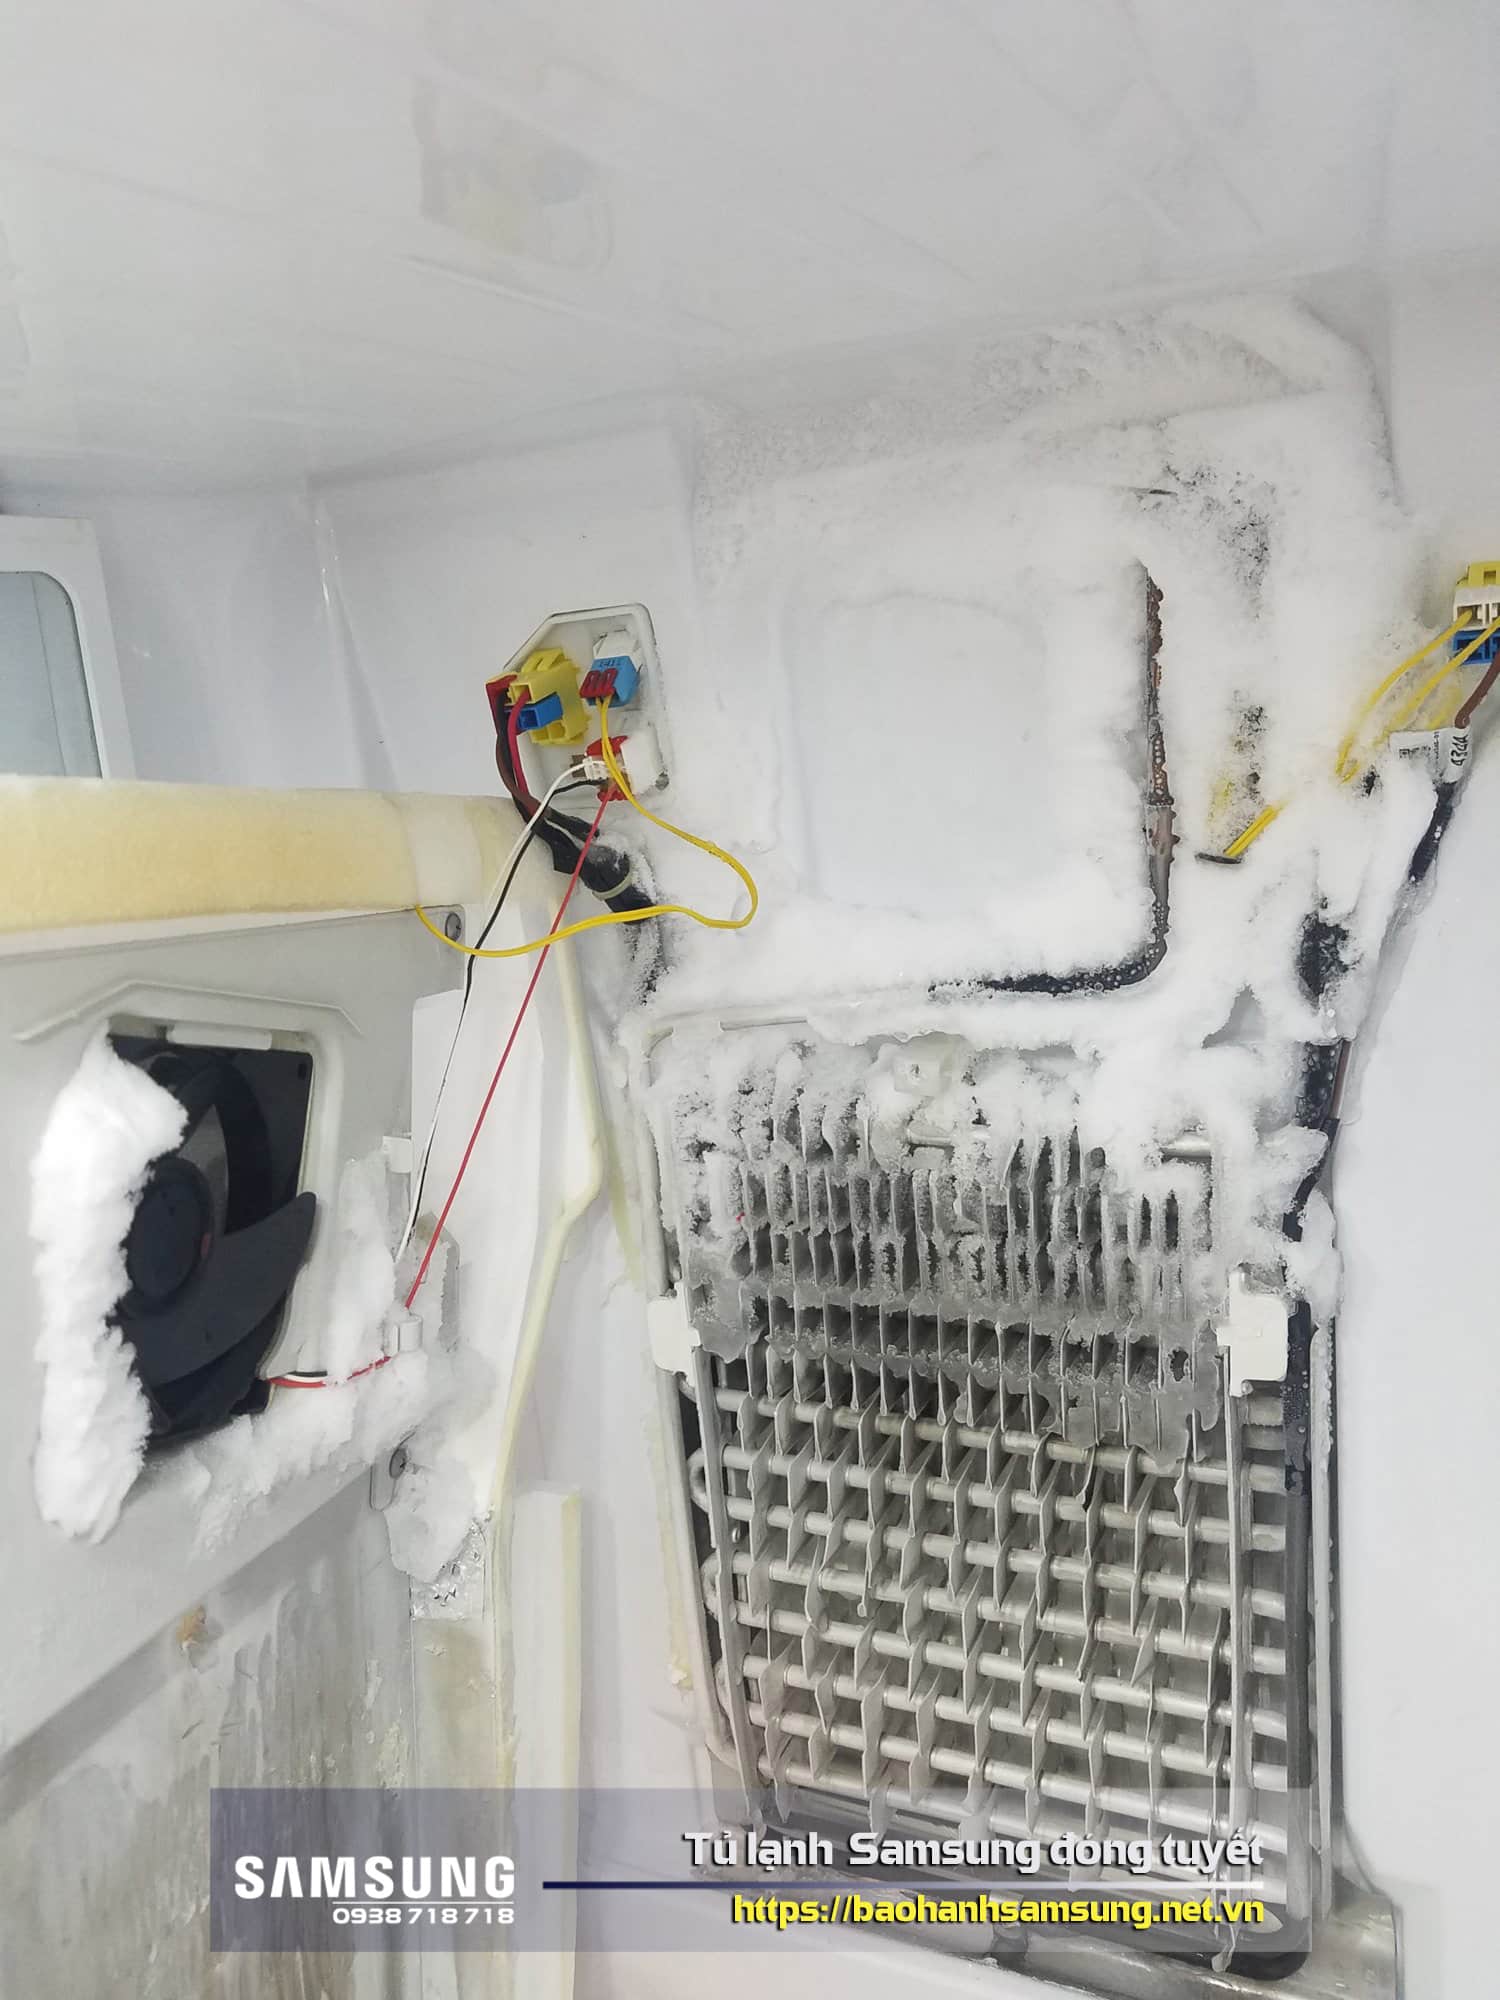 Hệ thống rã đông không hoạt động nên tủ lạnh Samsung bị đóng tuyết